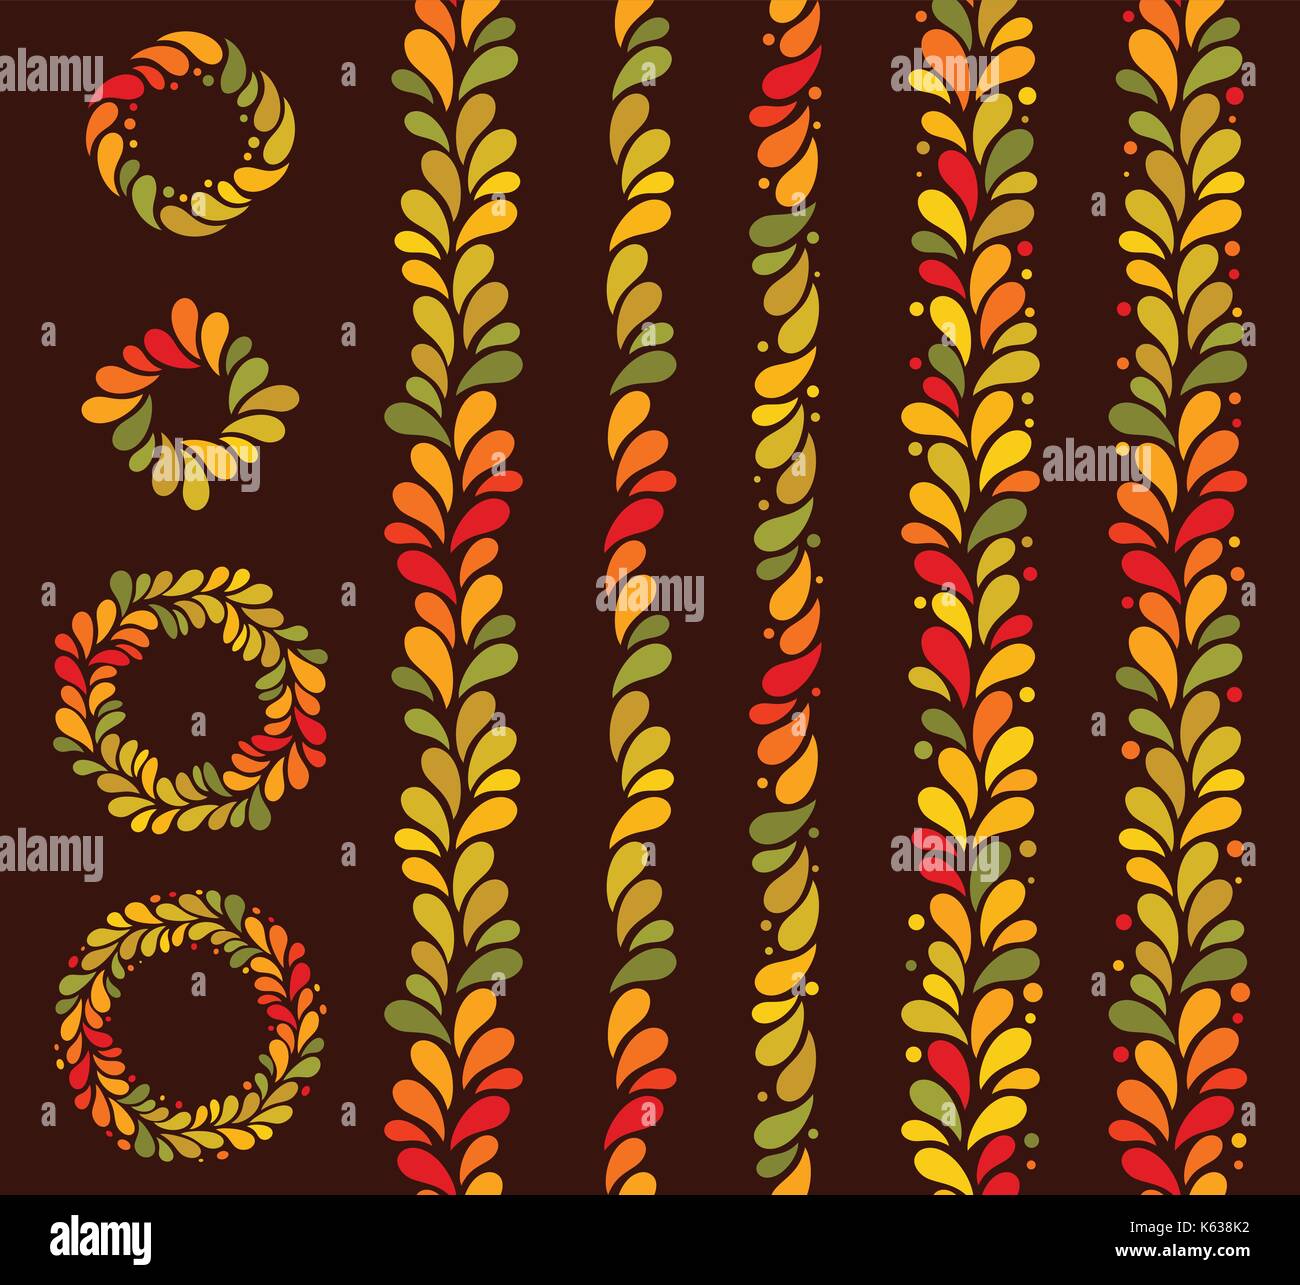 Vektor isoliert nahtlose Herbst farbigen vertikalen Linie der Blätter Hintergrund. September, Oktober, November einfaches Muster Stock Vektor